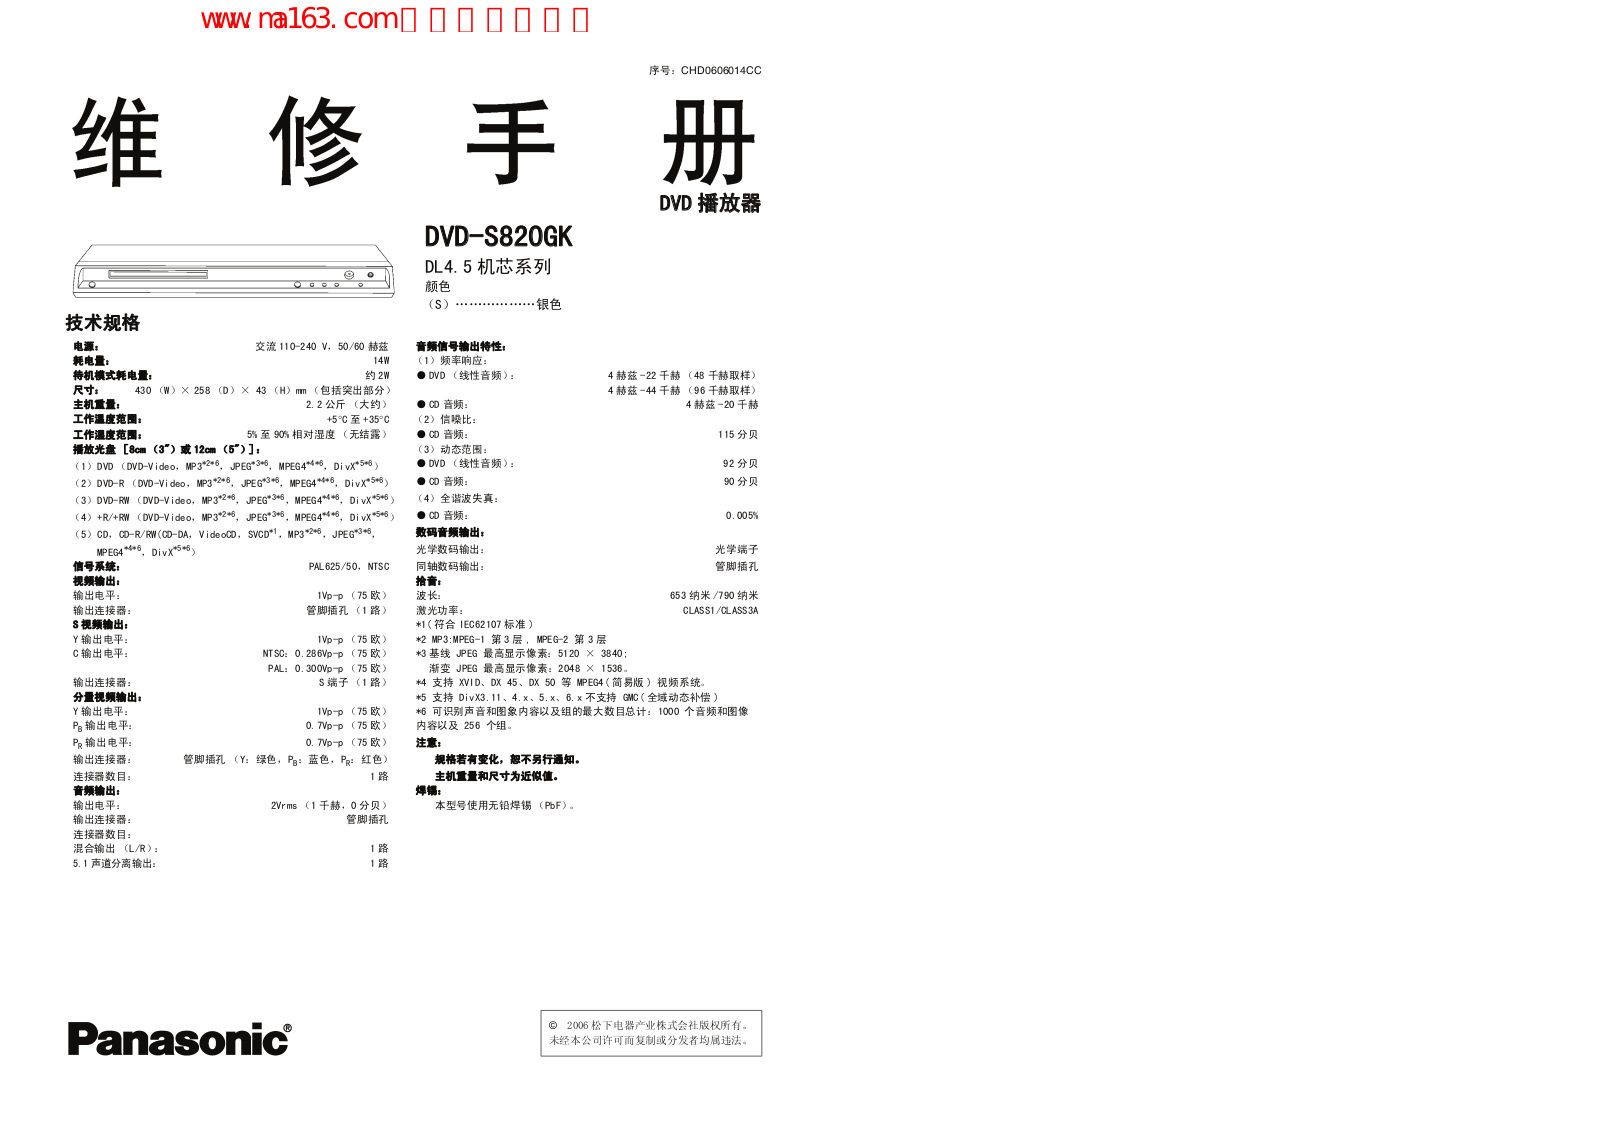 Panasonic DVD-S820GK repair manual